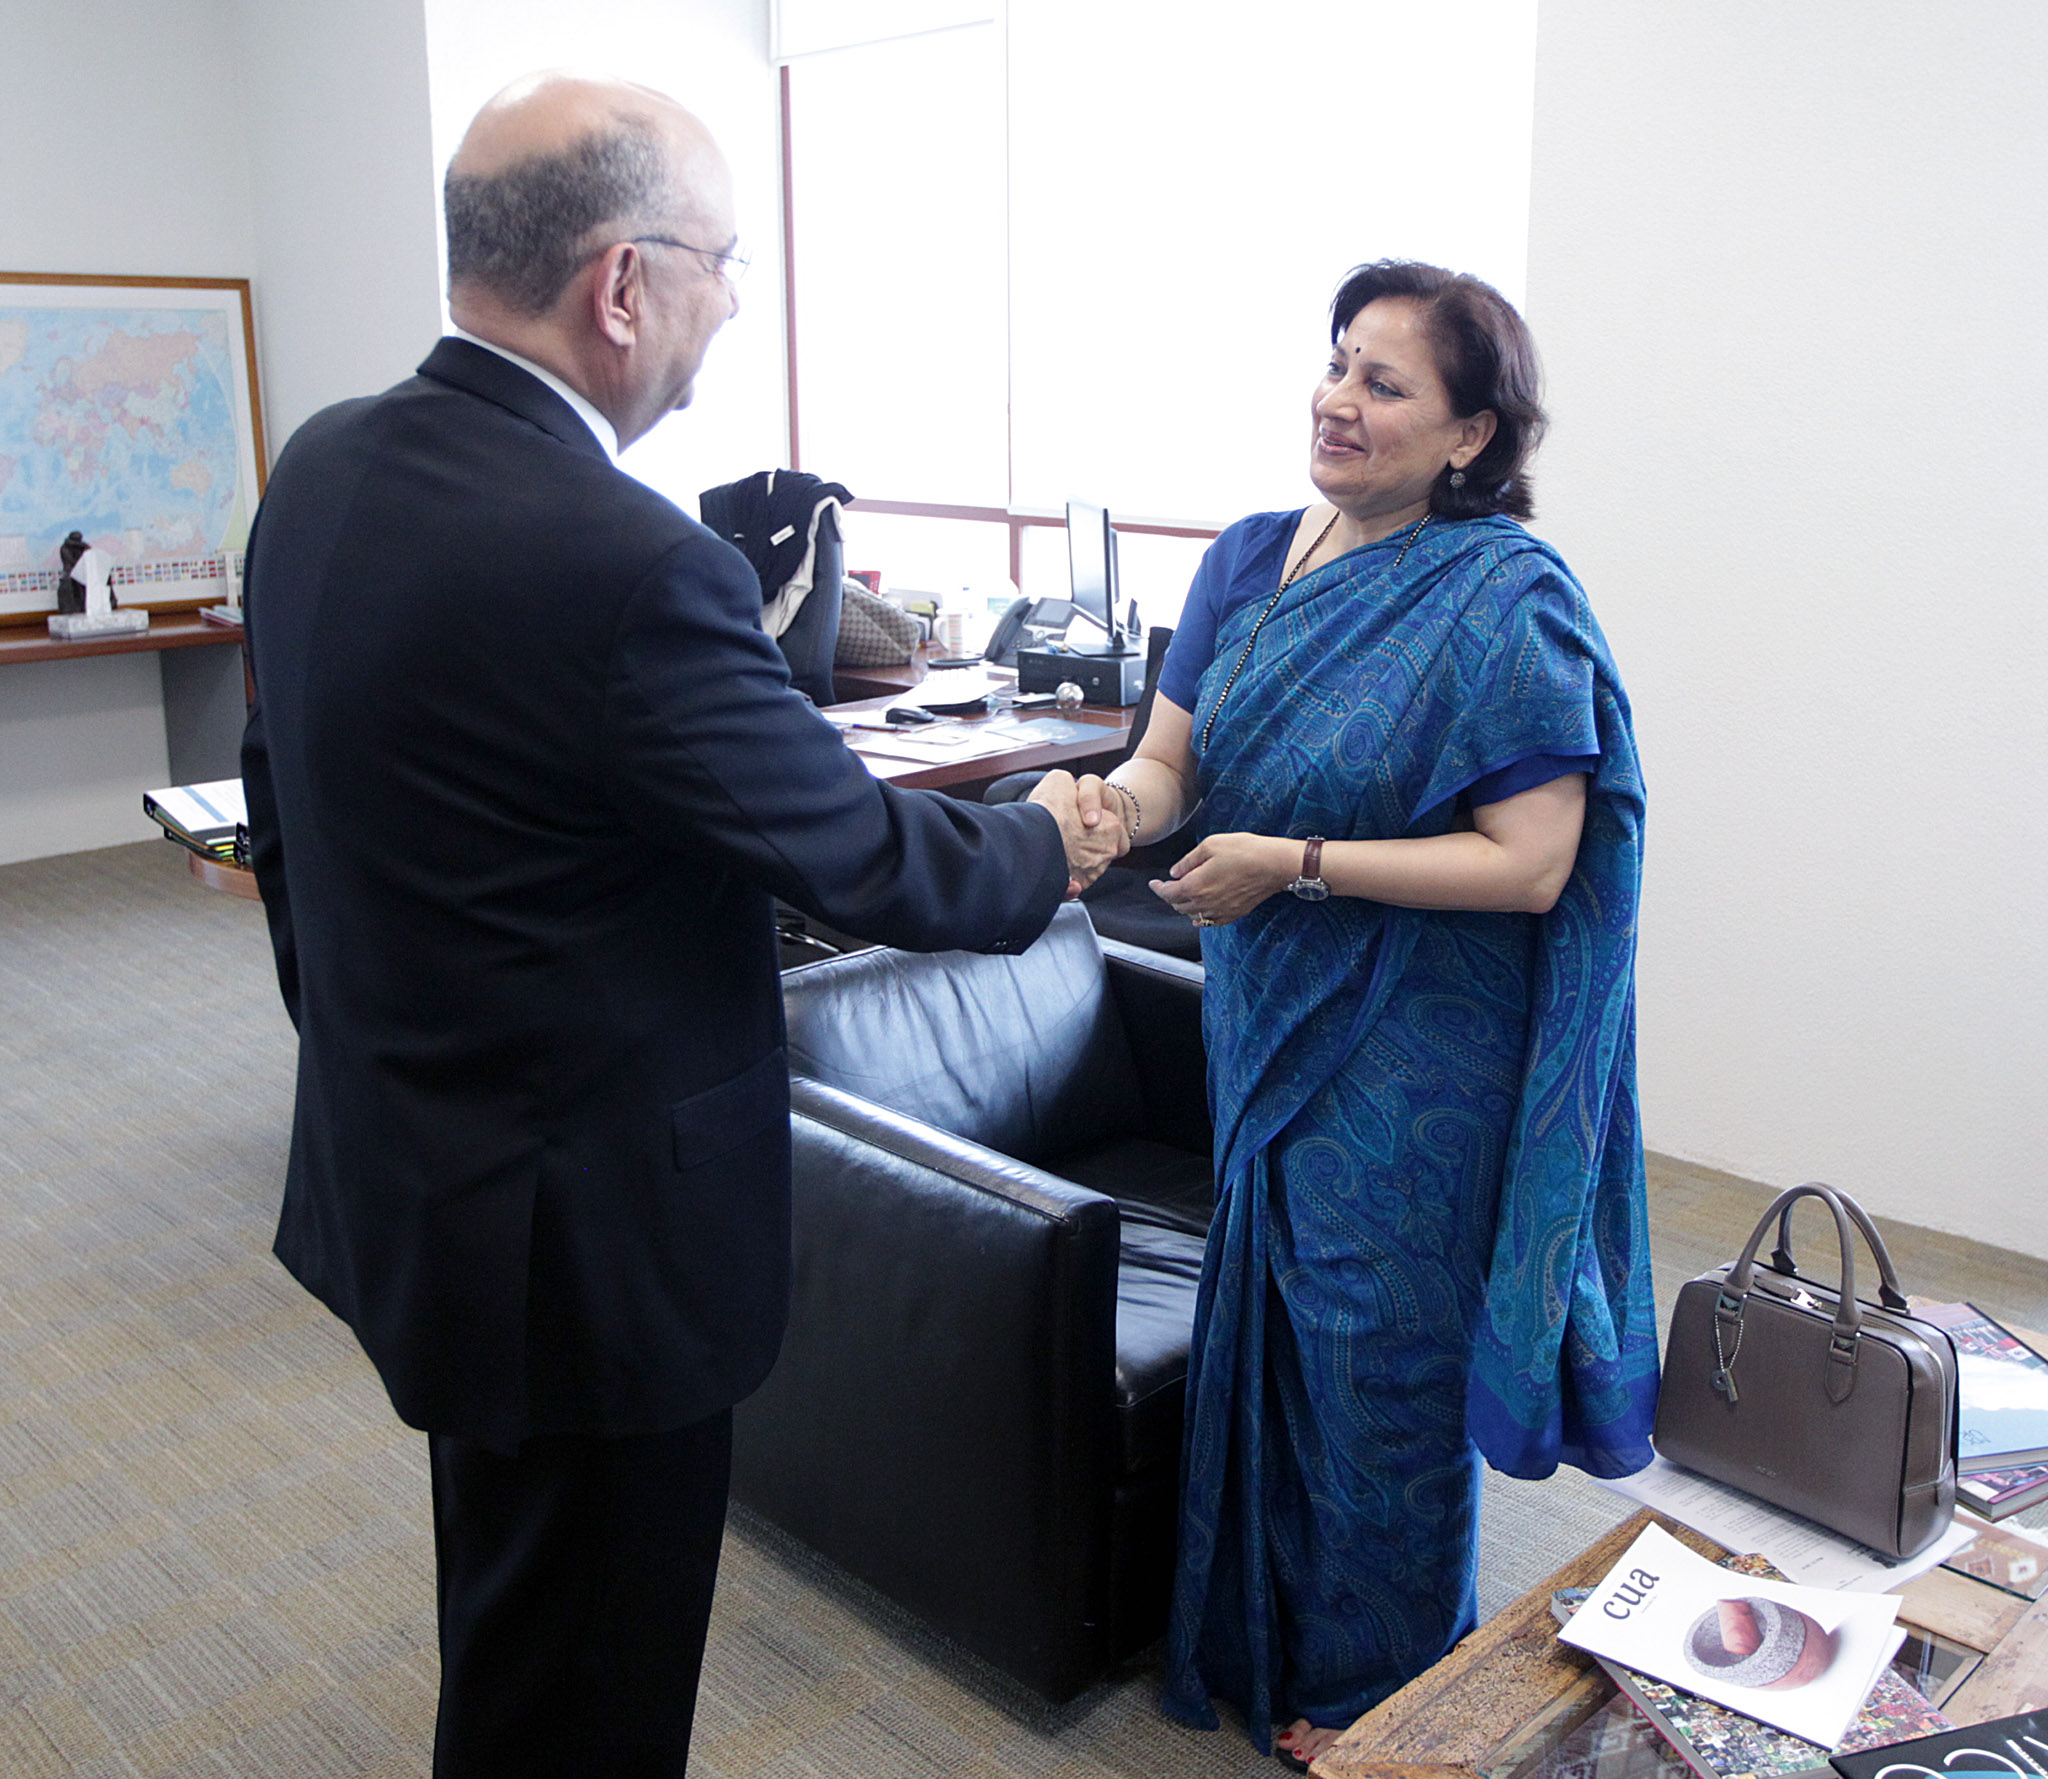  Embajador Carlos de Icaza, Subsecretario de Relaciones Exteriores de México y la Embajadora Preeti Saran, Subsecretaria de Relaciones Exteriores de la India